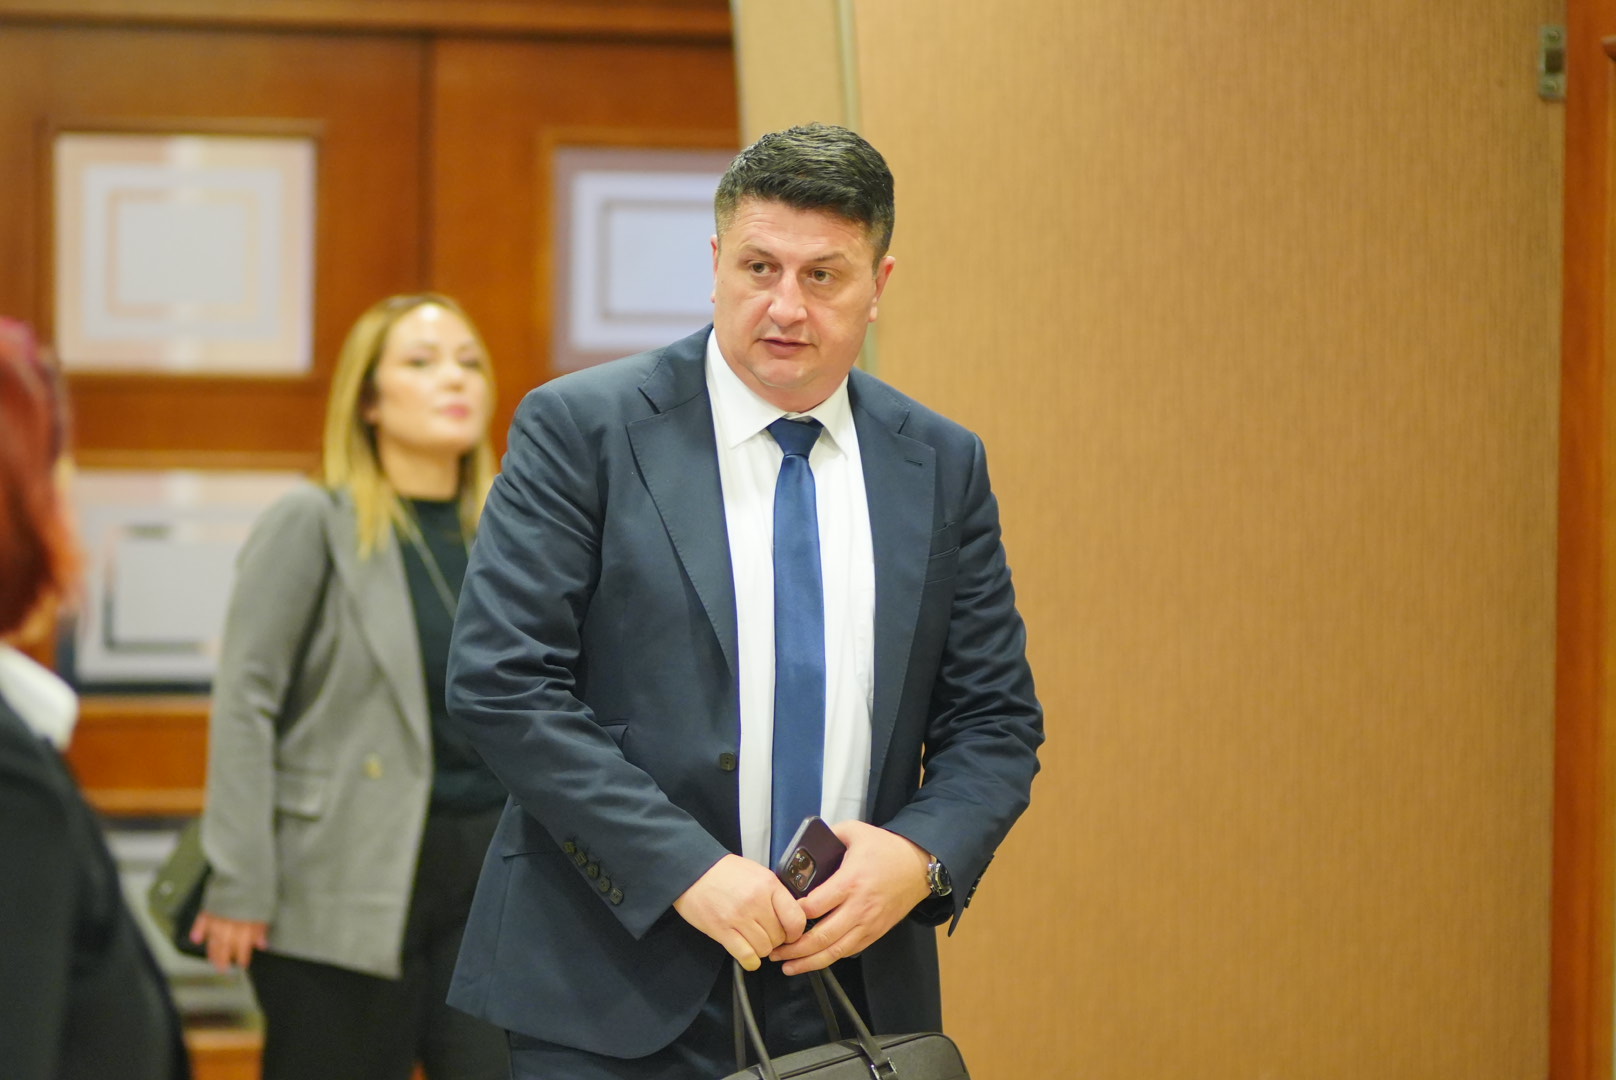 ZVANIČNO Milan Radović više nije poslanik